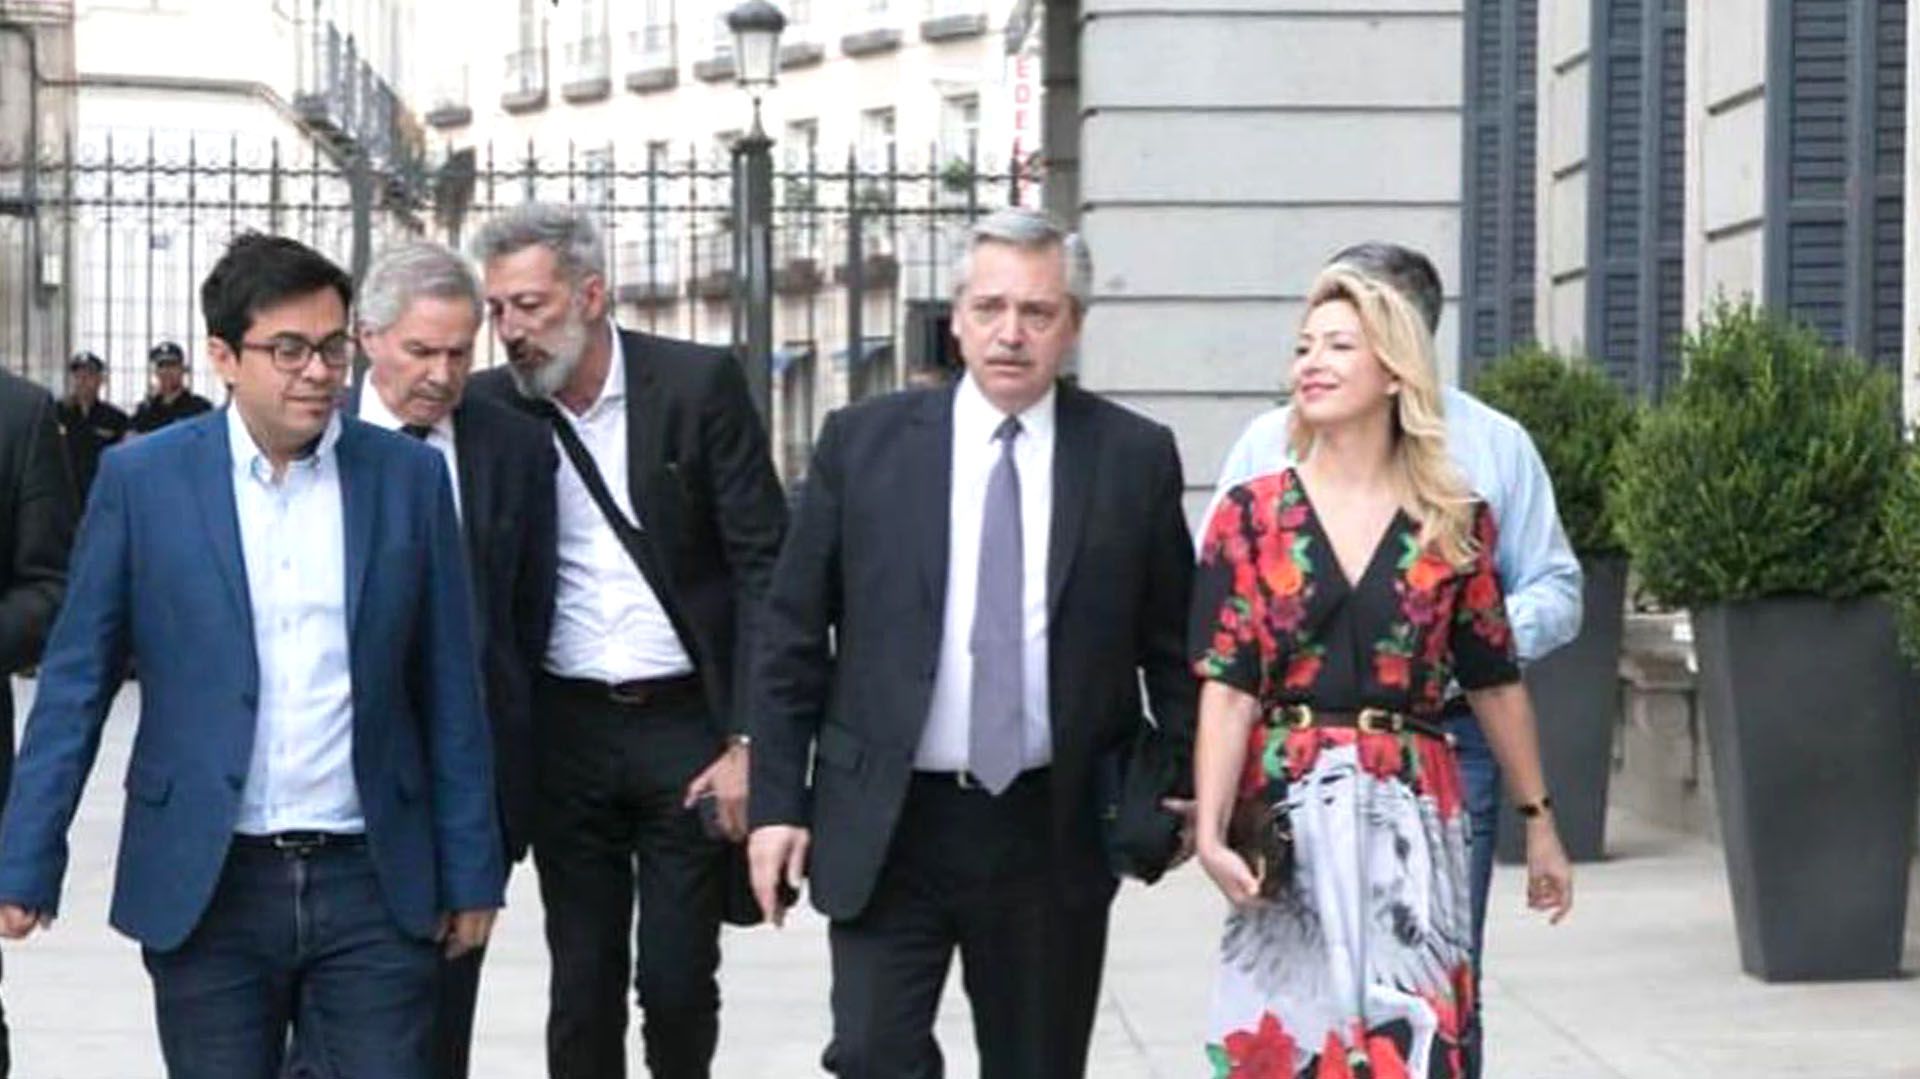 Alberto Fernández en Madrid, y por detrás aparece Felipe Solá, que sería el canciller si el candidato presidencial del Frente de Todos vence a Mauricio Macri